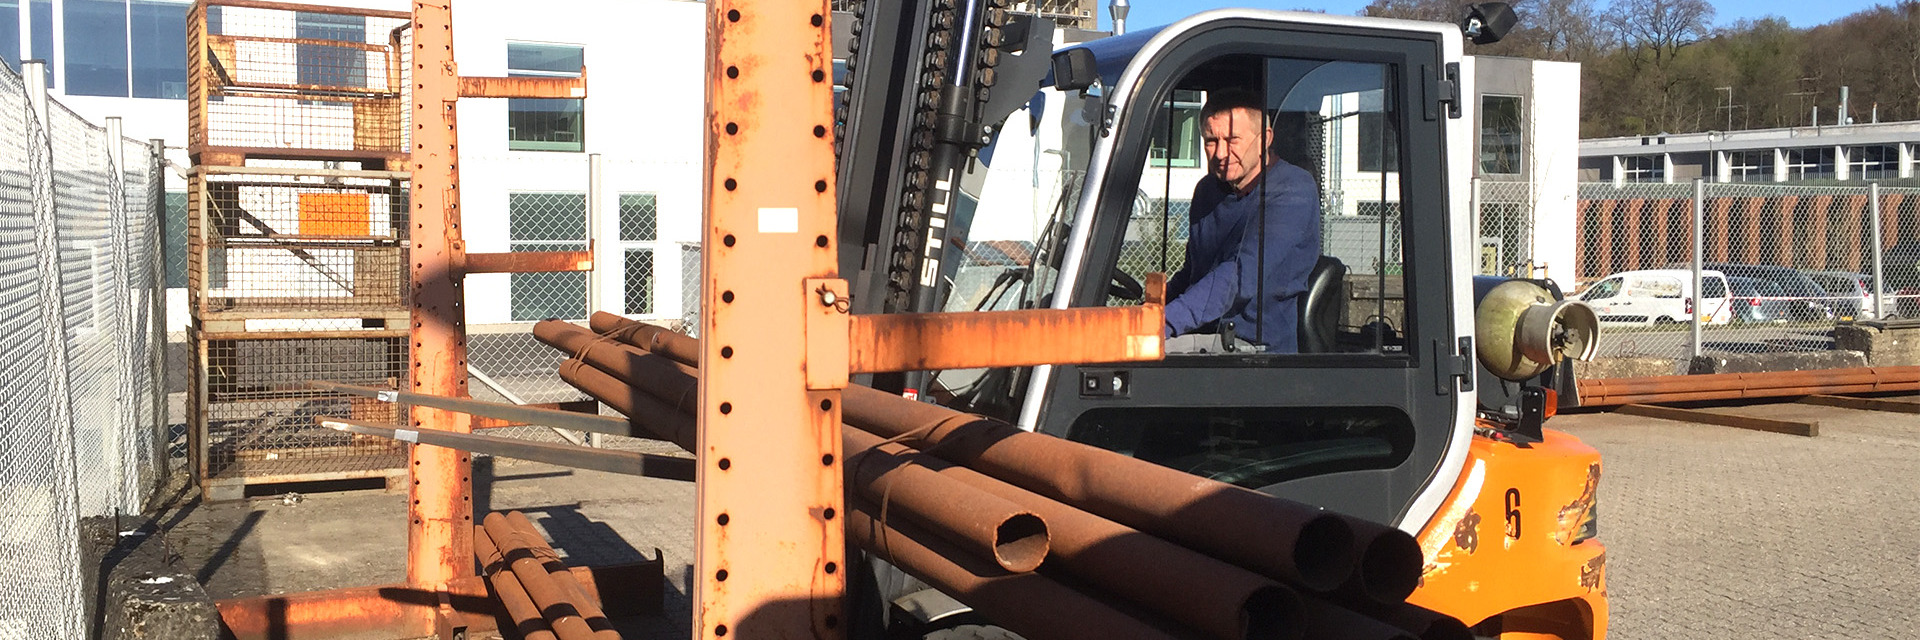 Truckfører løfter jernrør under truckundervisning på College360